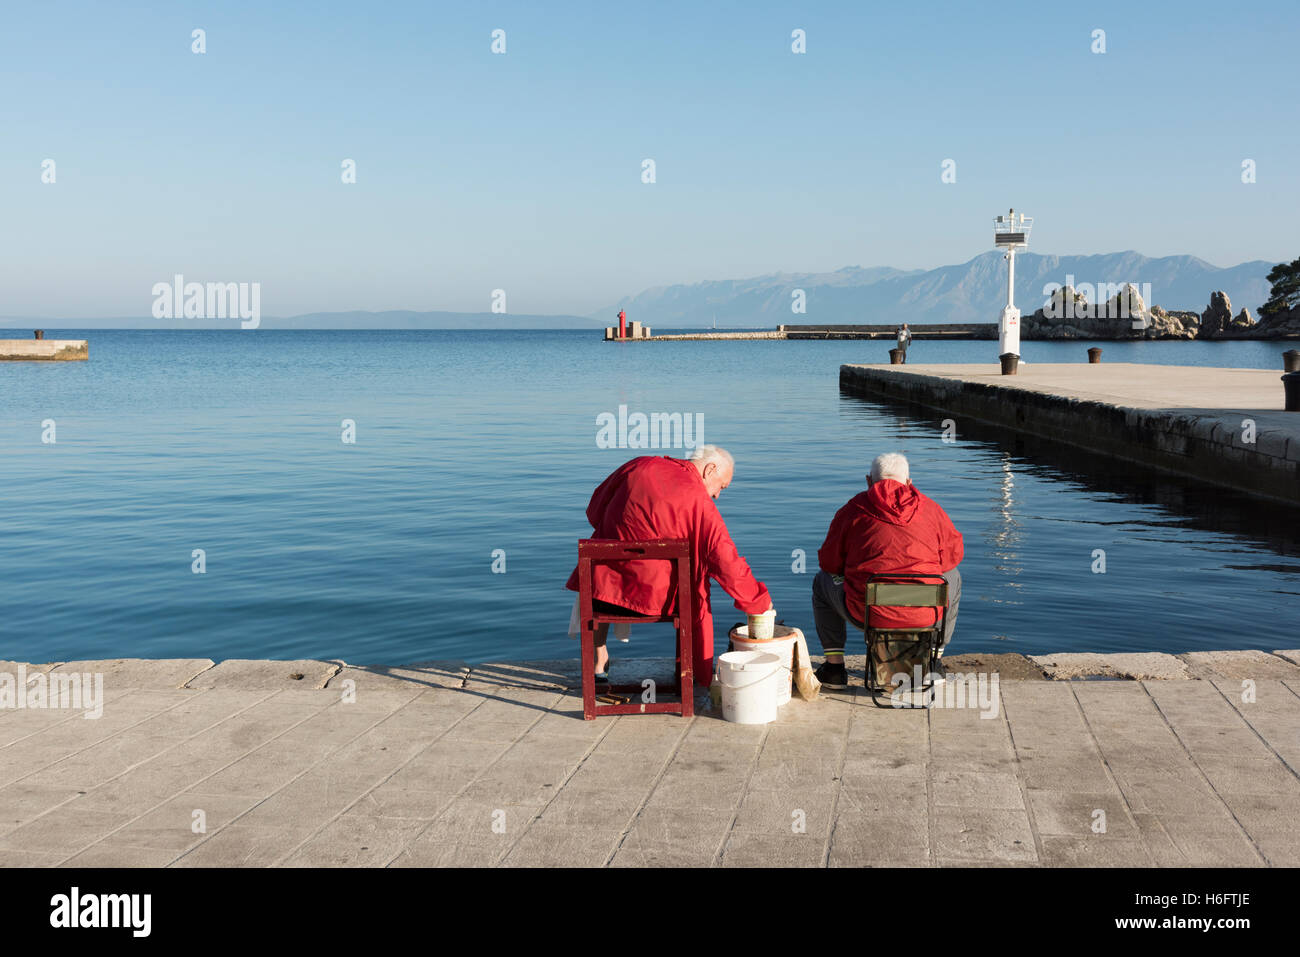 Zwei ältere Männer tragen rote Mäntel sitzen auf der Hafenmauer in Trpanj Kroatien Angeln im Meer Stockfoto